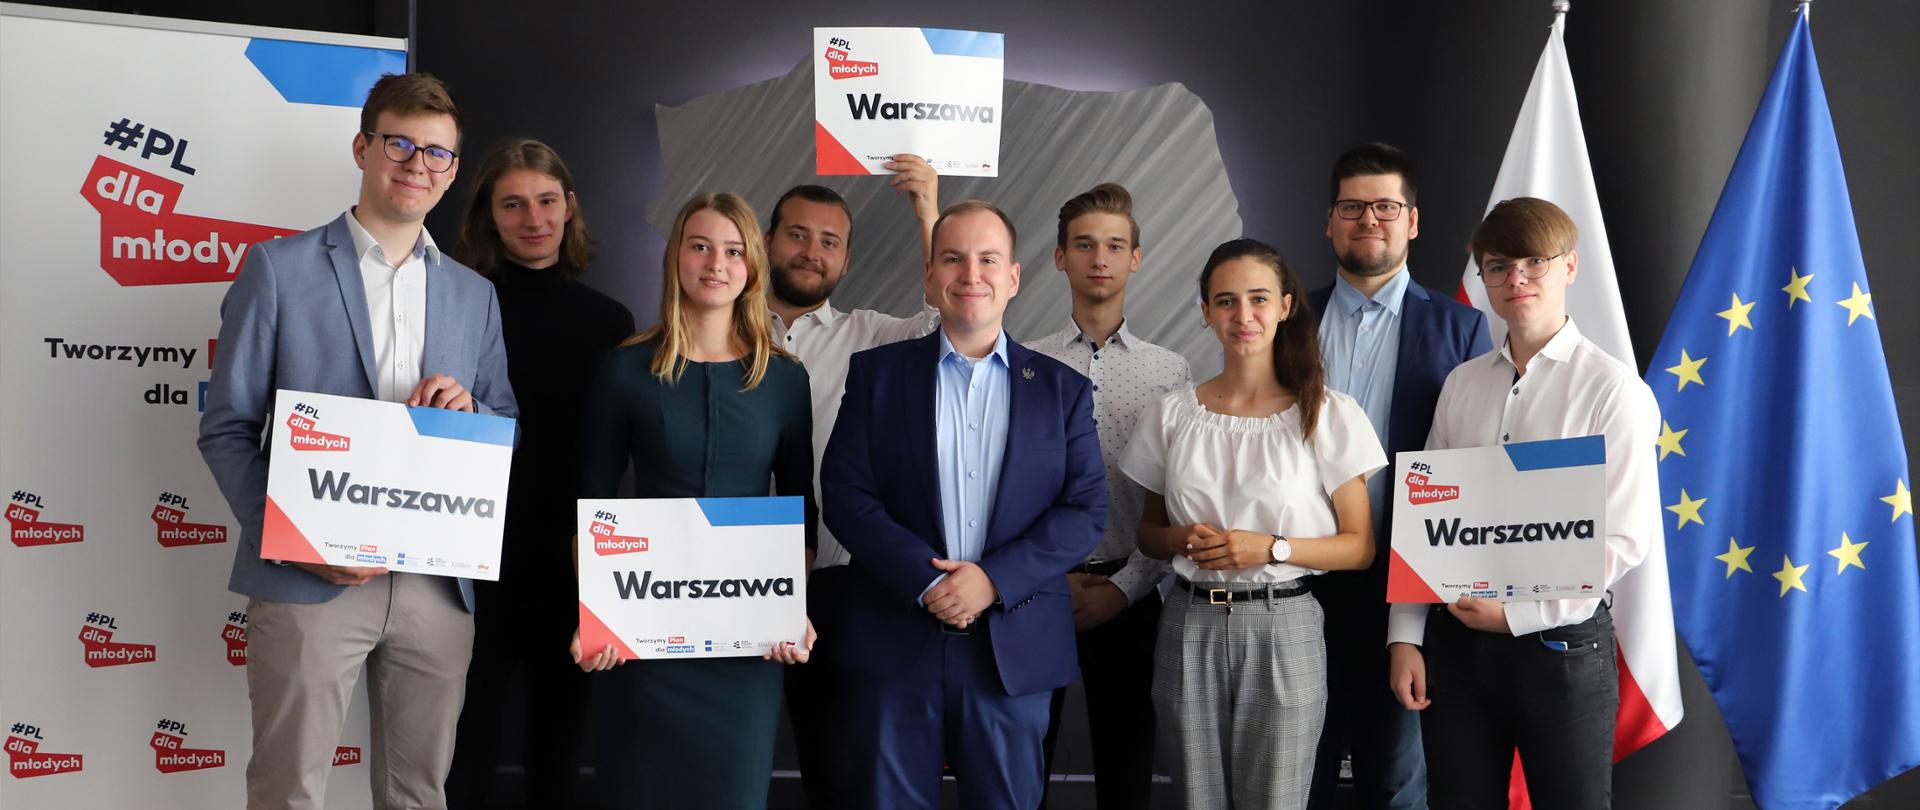 Wiceminister Adam Andruszkiewicz w otoczeniu przedstawicieli projektu #PLdlaMłodych (8 osób). Trzy osoby trzymają w dłoniach plansze z napisem Warszawa i logiem projektu. 